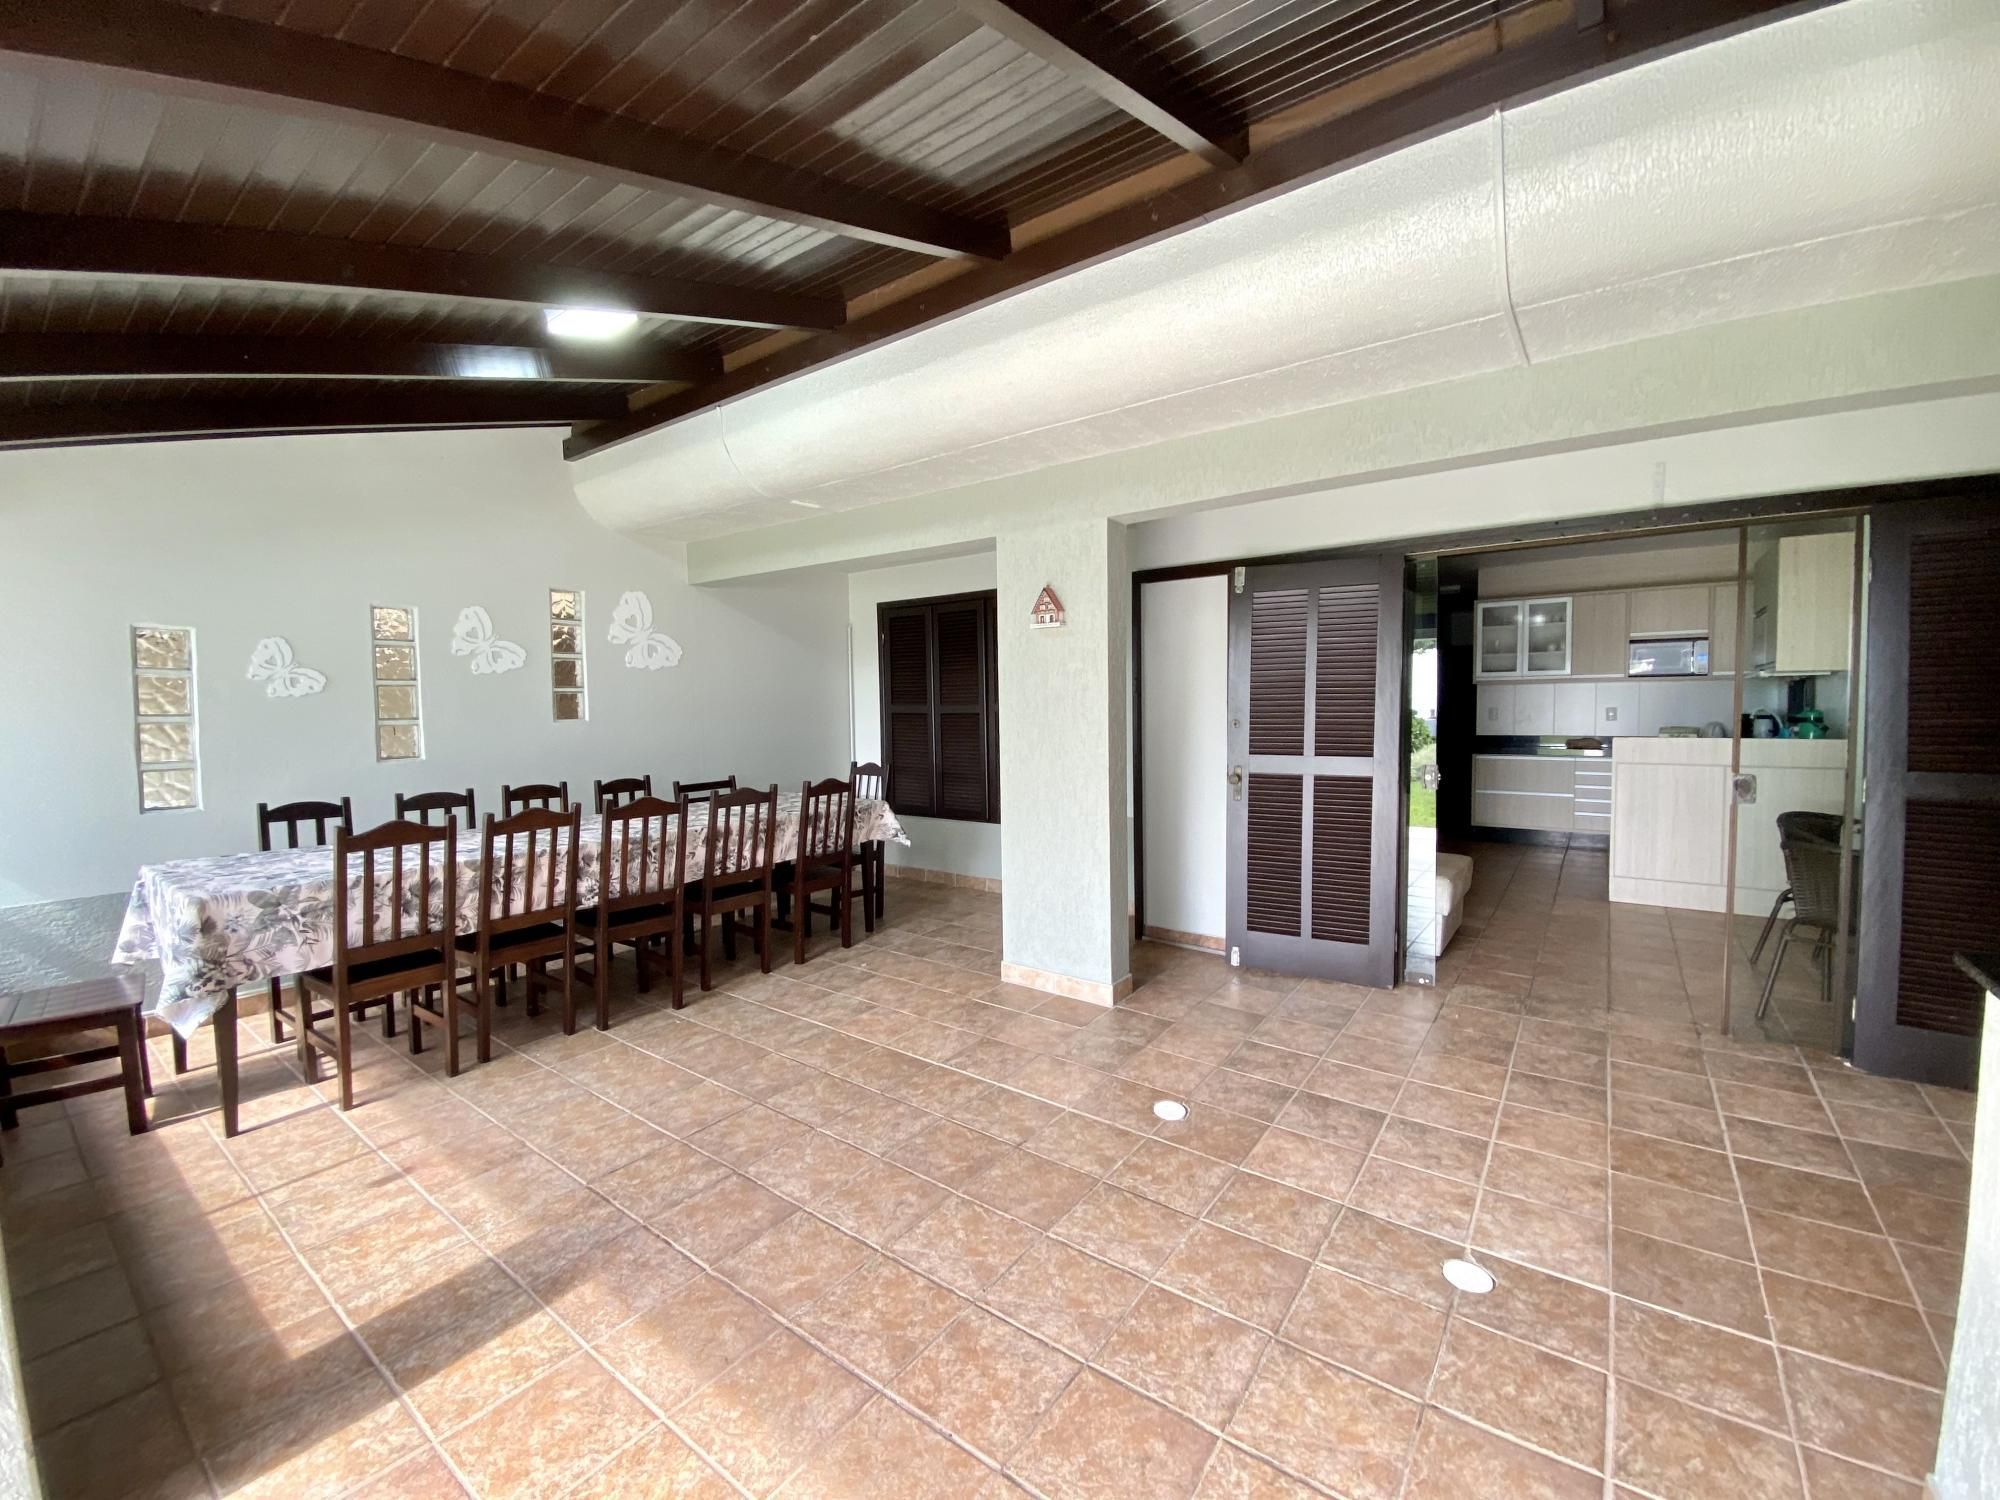 Casa com 5 Dormitórios para alugar, 150 m² por R$ 1.200,00